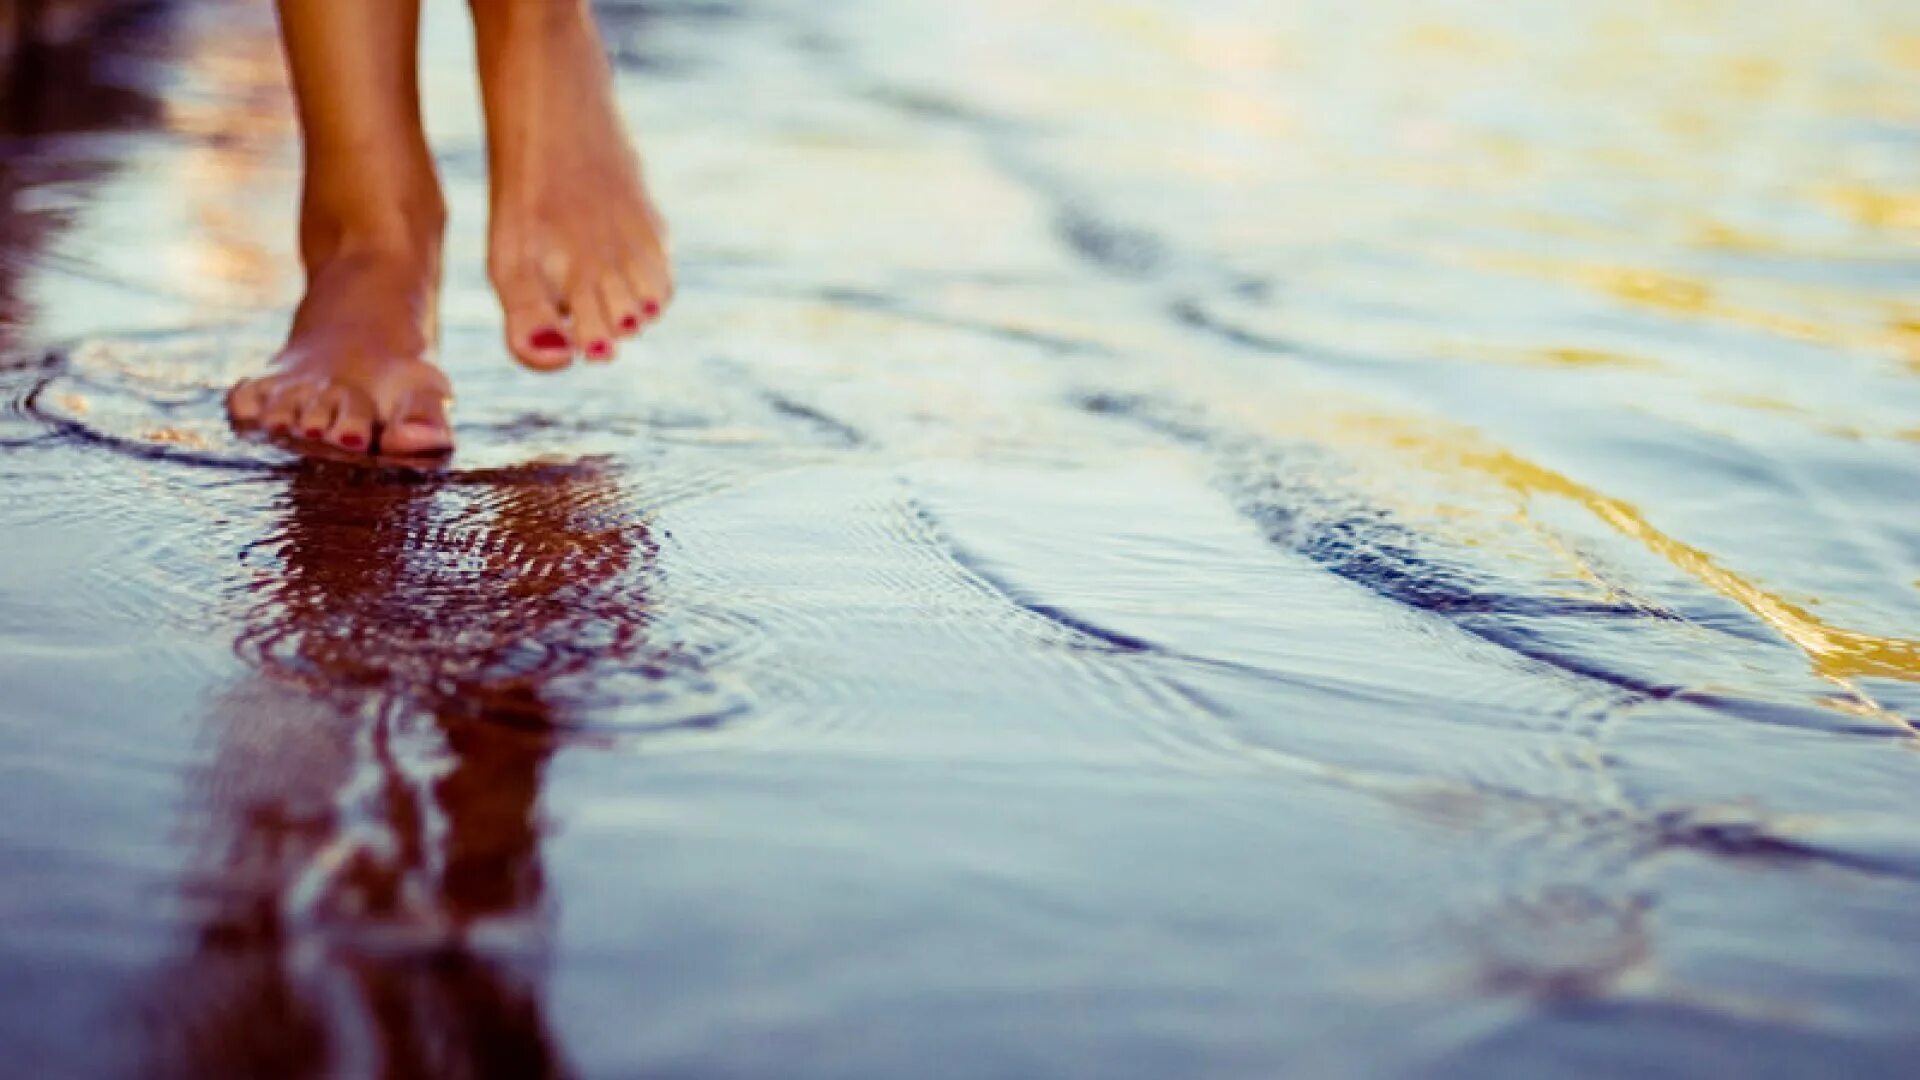 Жить и знать что все хорошо. Ноги по воде. Босые ноги в воде. Ноги в луже. Маленькими шагами к счастью.